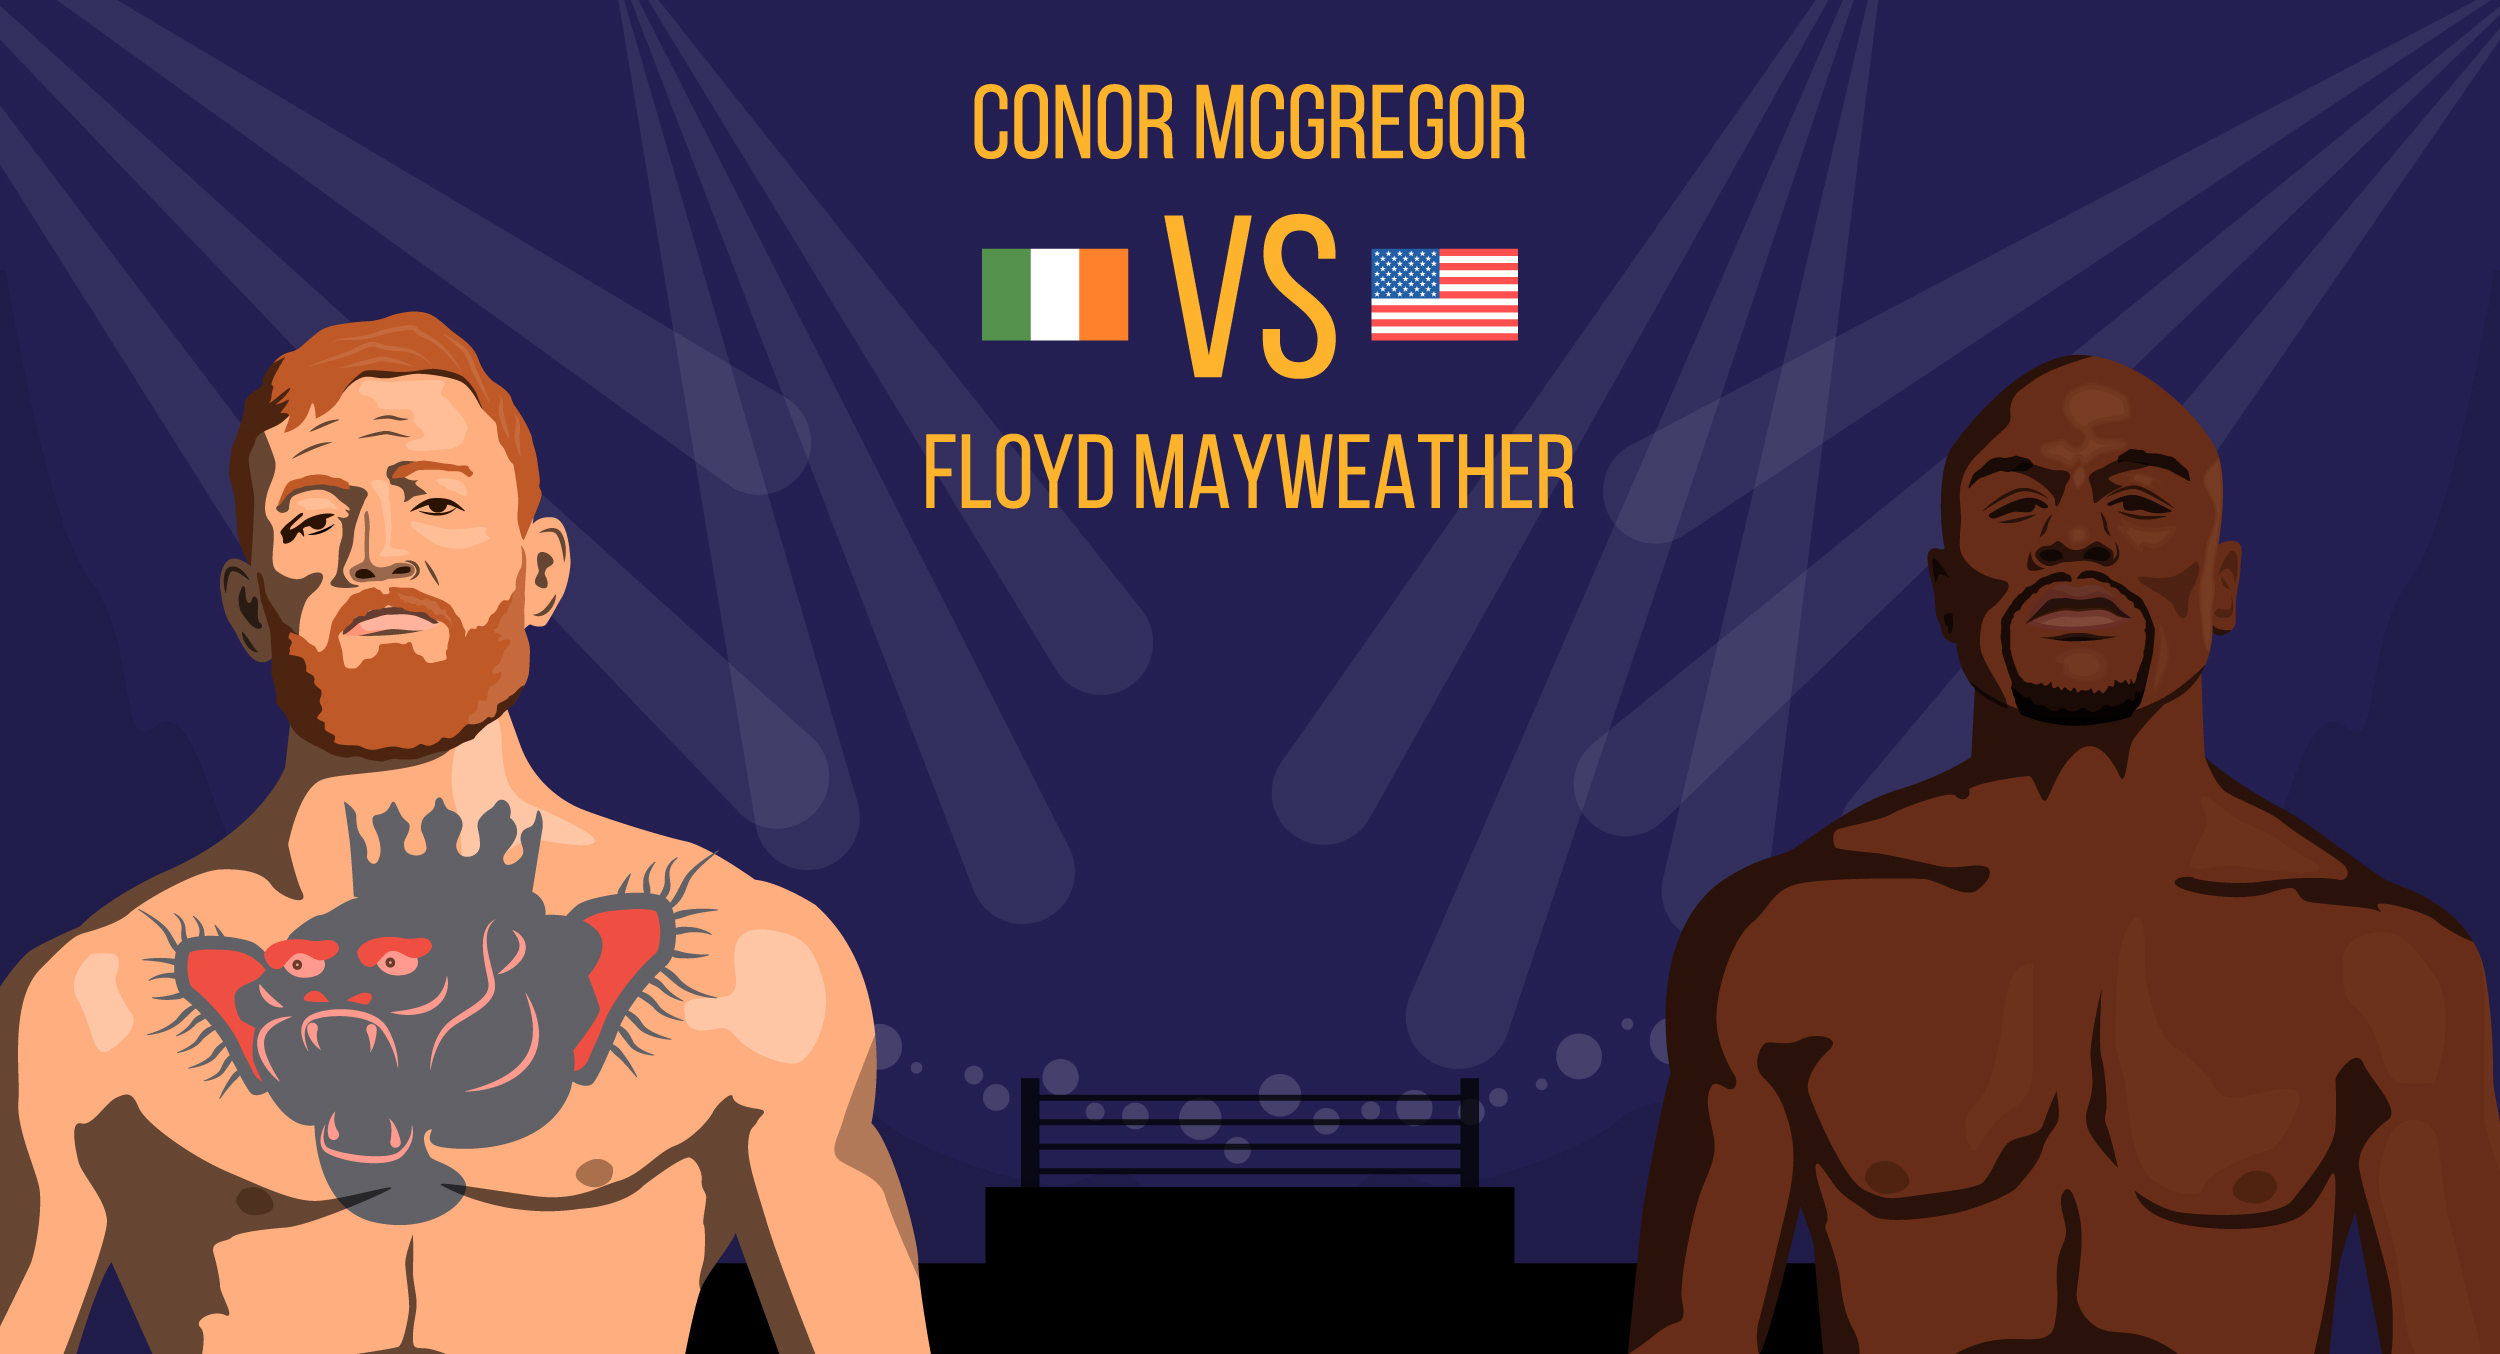 Conor McGregor v Floyd Mayweather 2?